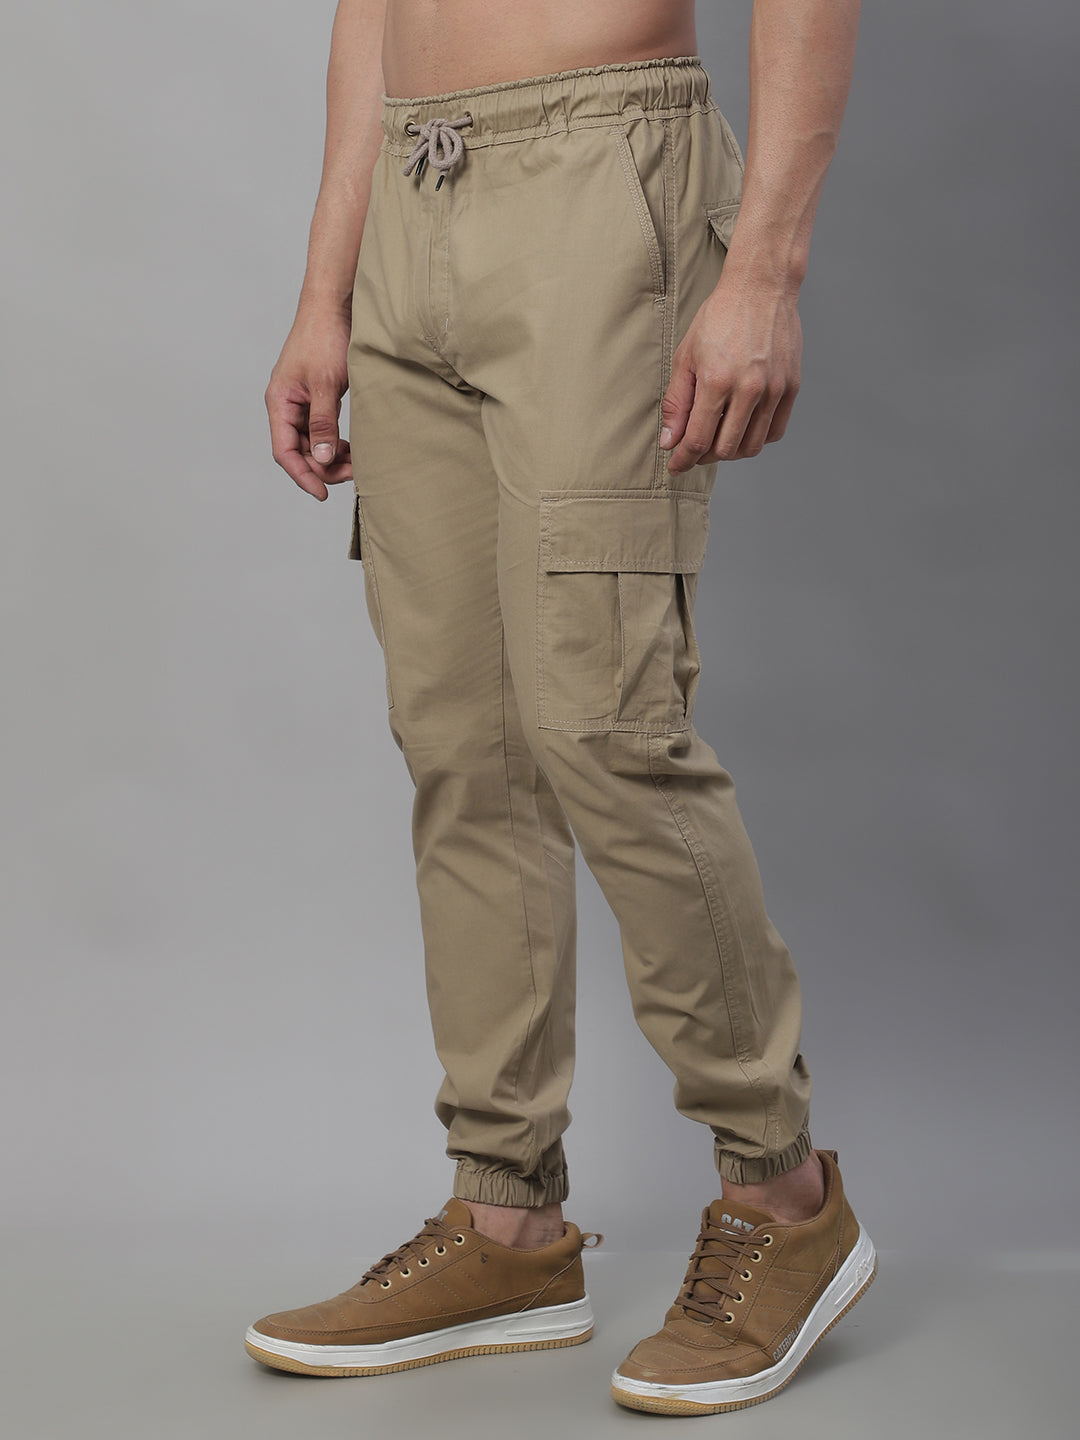 Jainish Men's Casual Cotton Solid Cargo Pants - Beige - Distacart